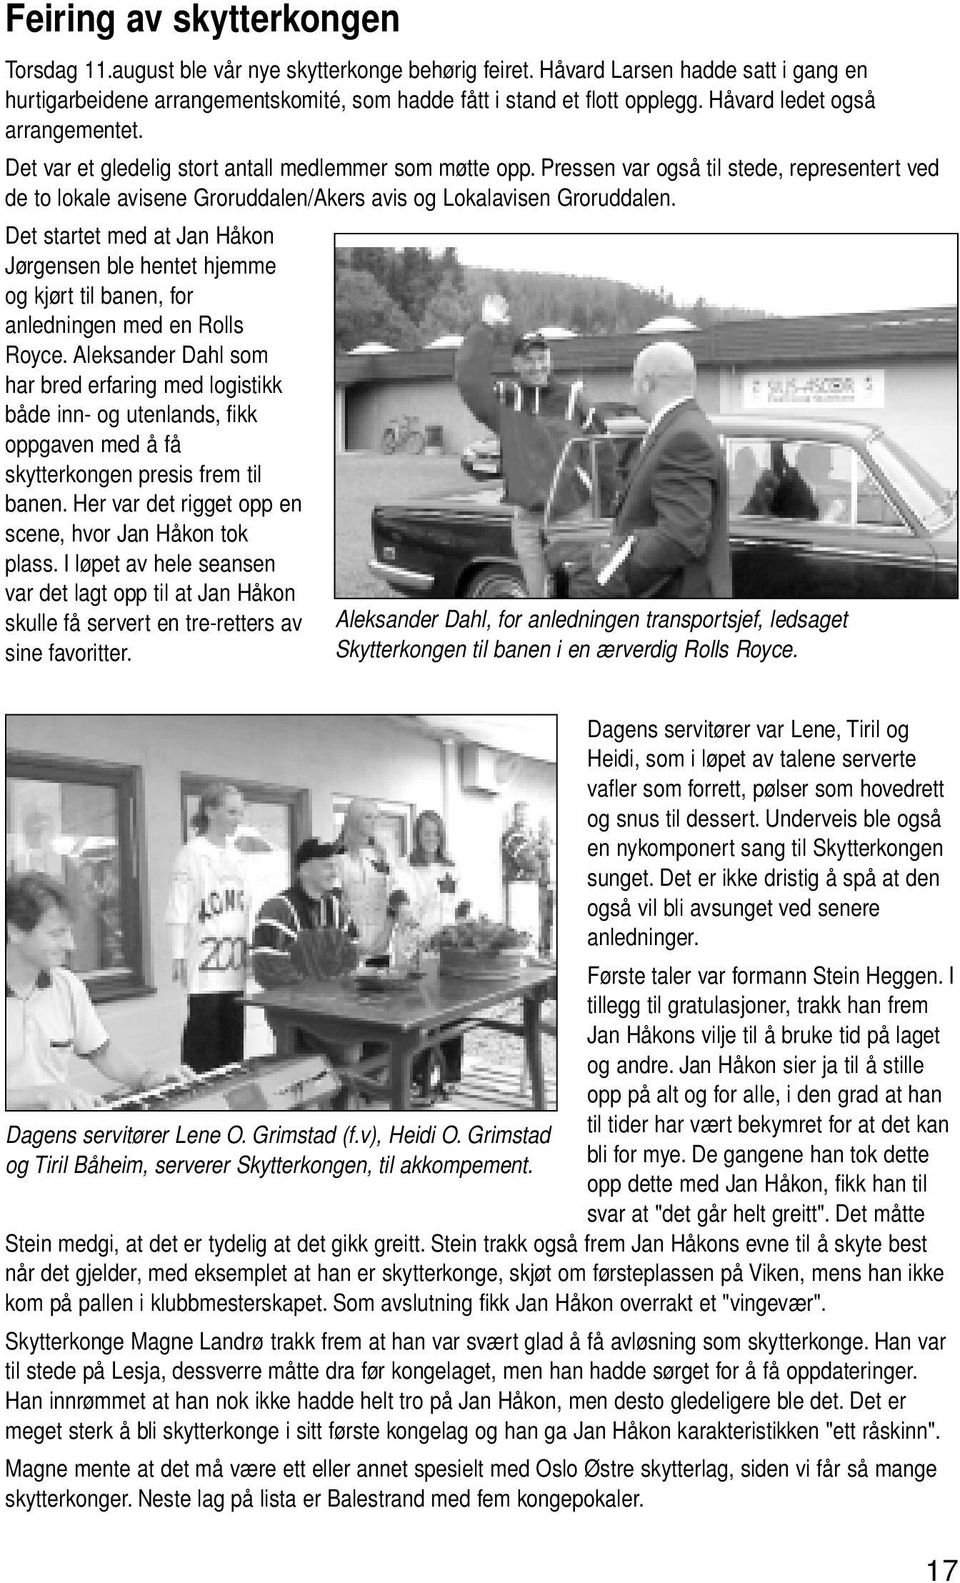 Pressen var også til stede, representert ved de to lokale avisene Groruddalen/Akers avis og Lokalavisen Groruddalen.